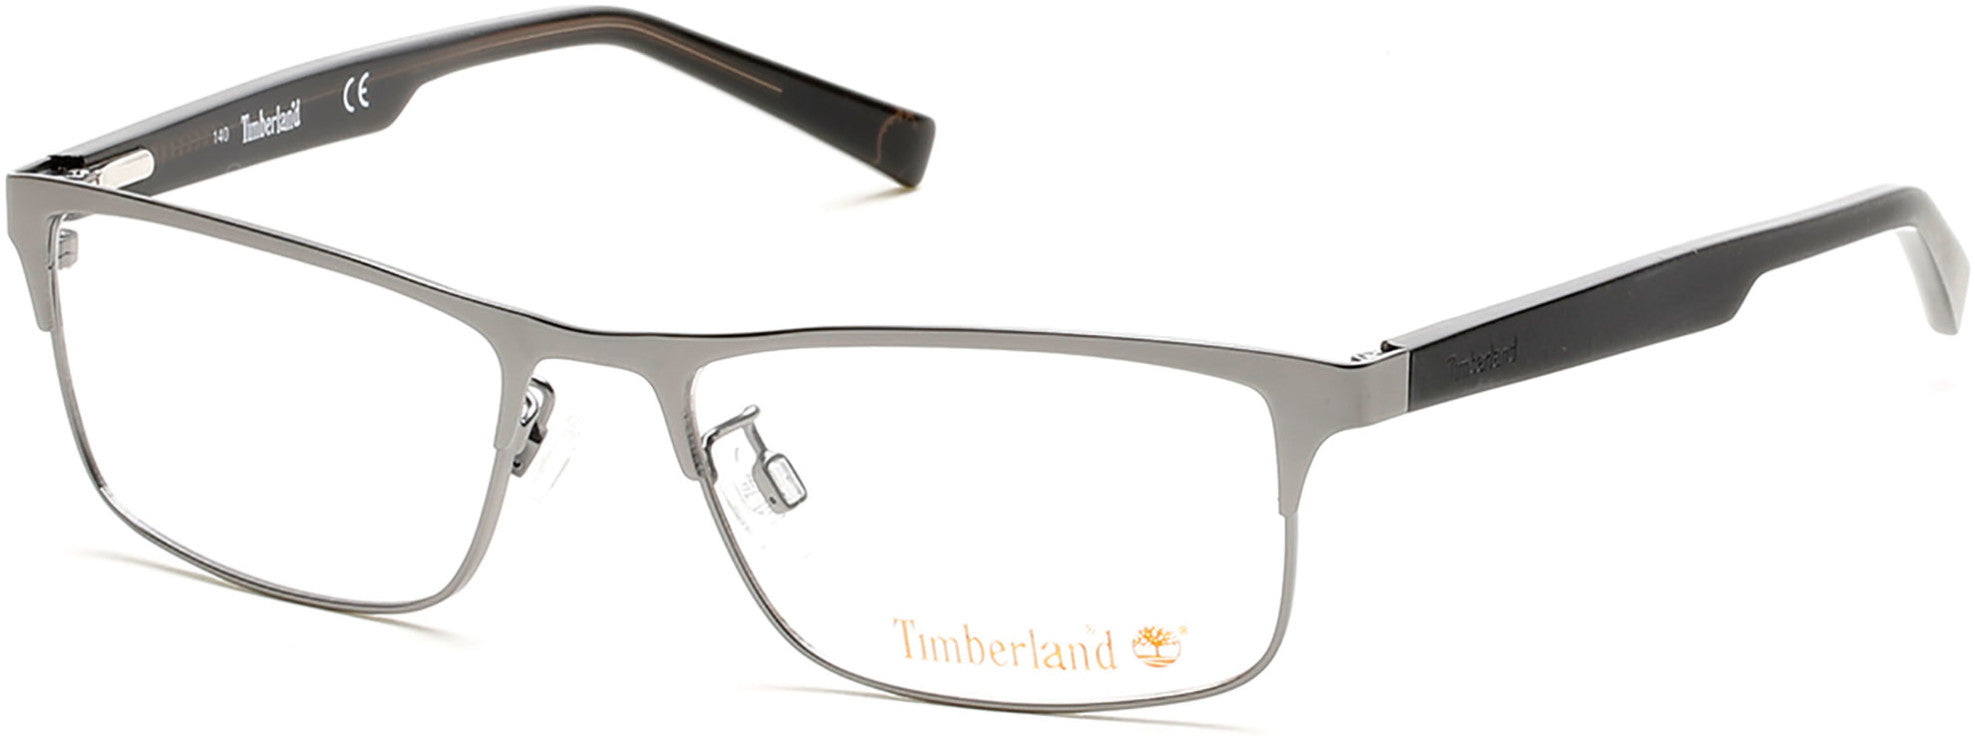 Timberland TB1547 Eyeglasses 009-009 - Matte Gunmetal